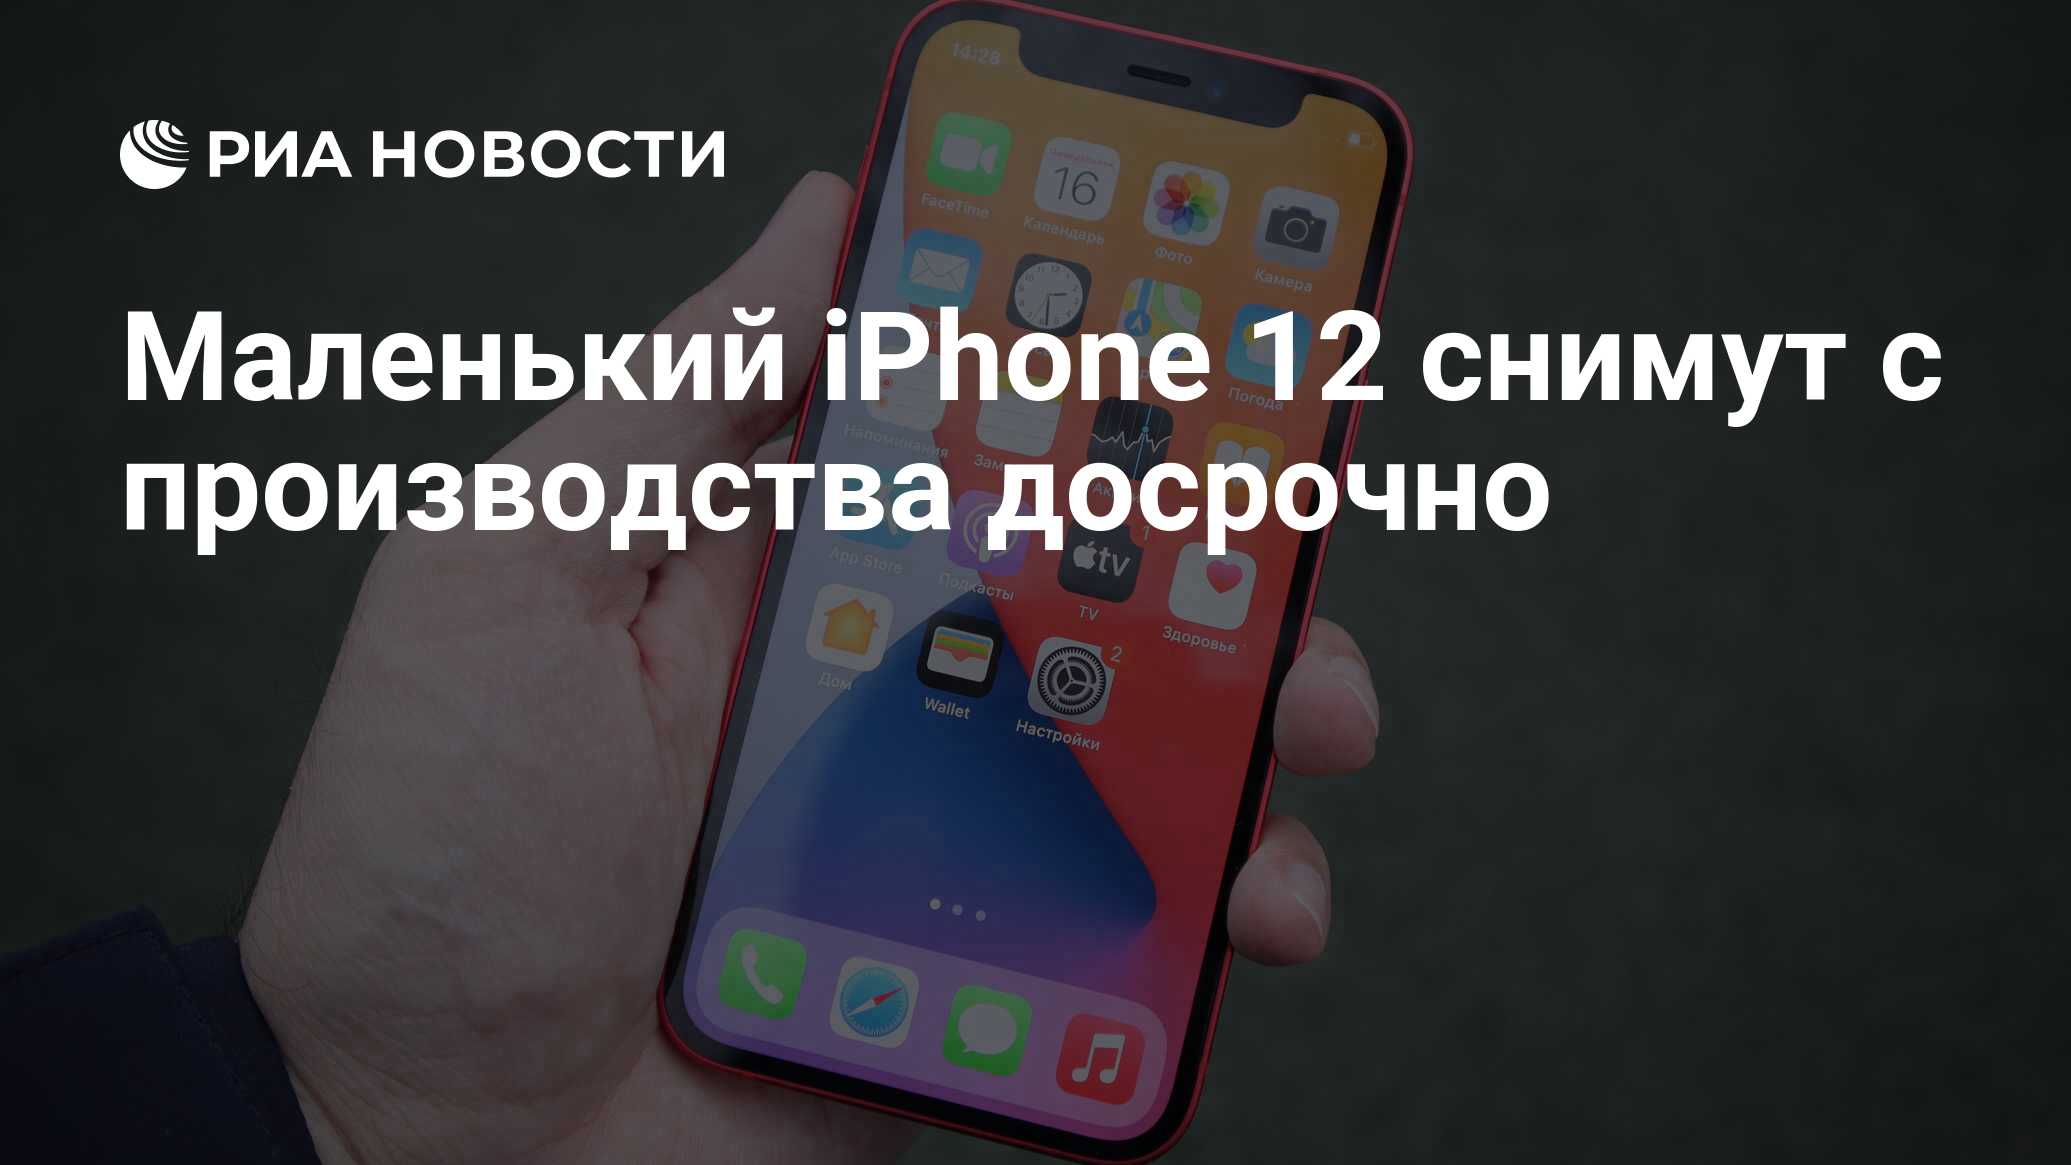 Маленький iPhone 12 снимут с производства досрочно - РИА Новости, 08.02.2021